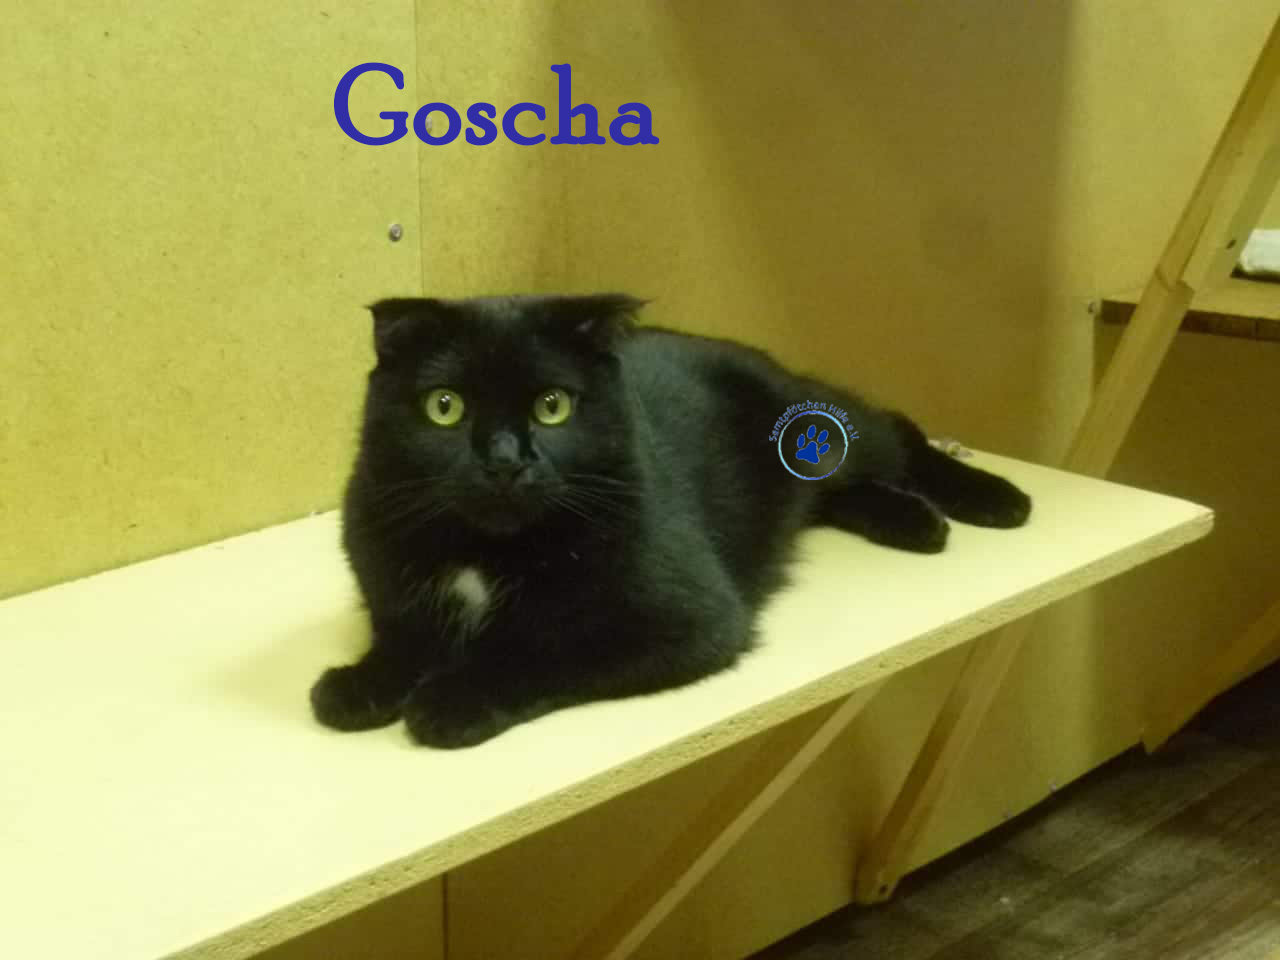 Goscha